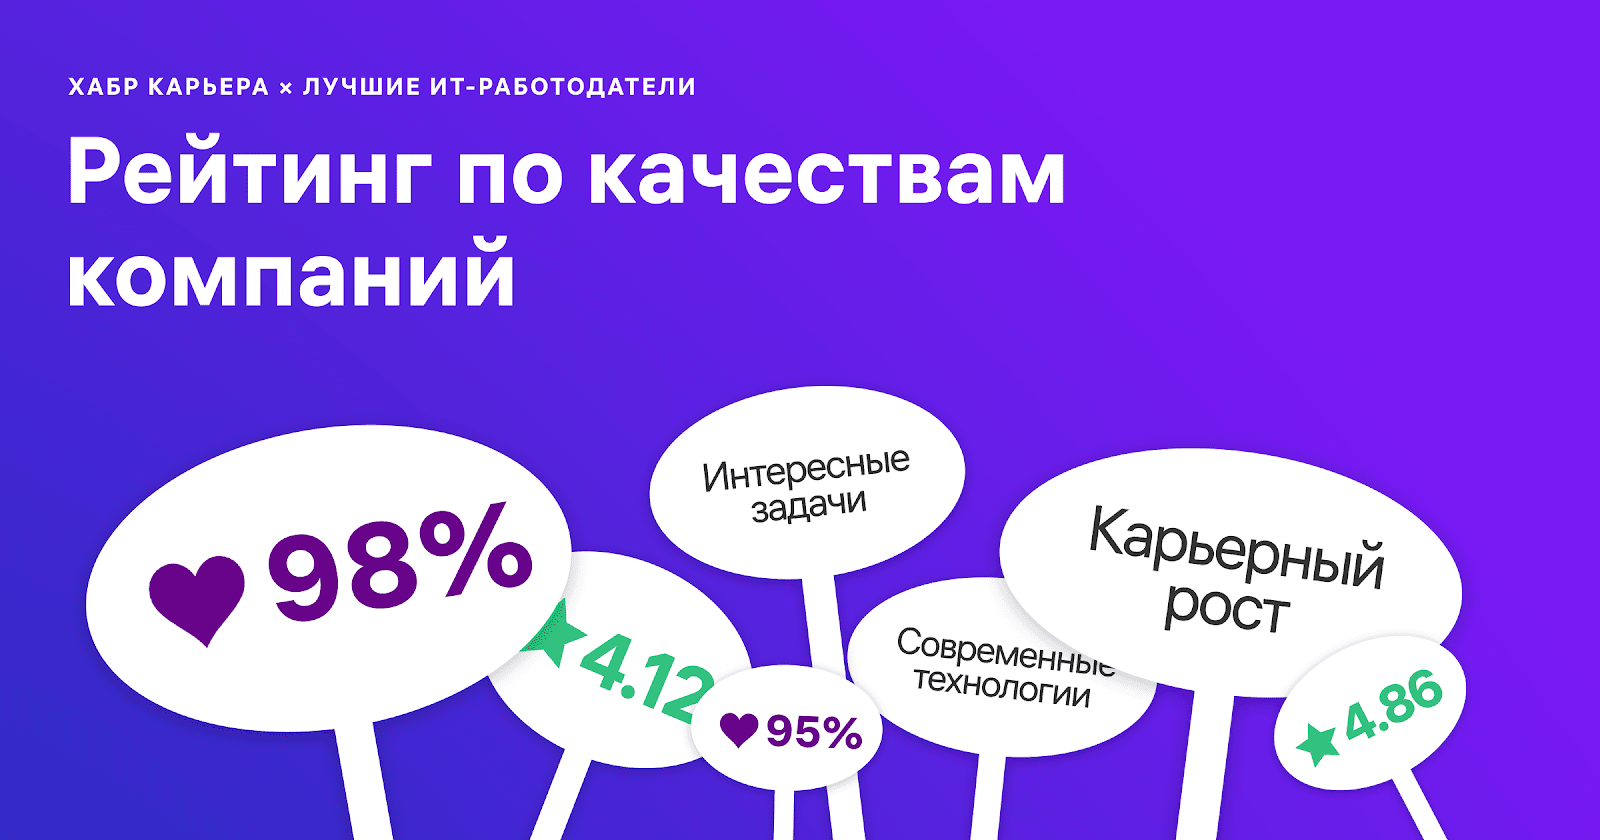 Лучшие ИТ-работодатели России 2019: рейтинг по качествам компаний - 1